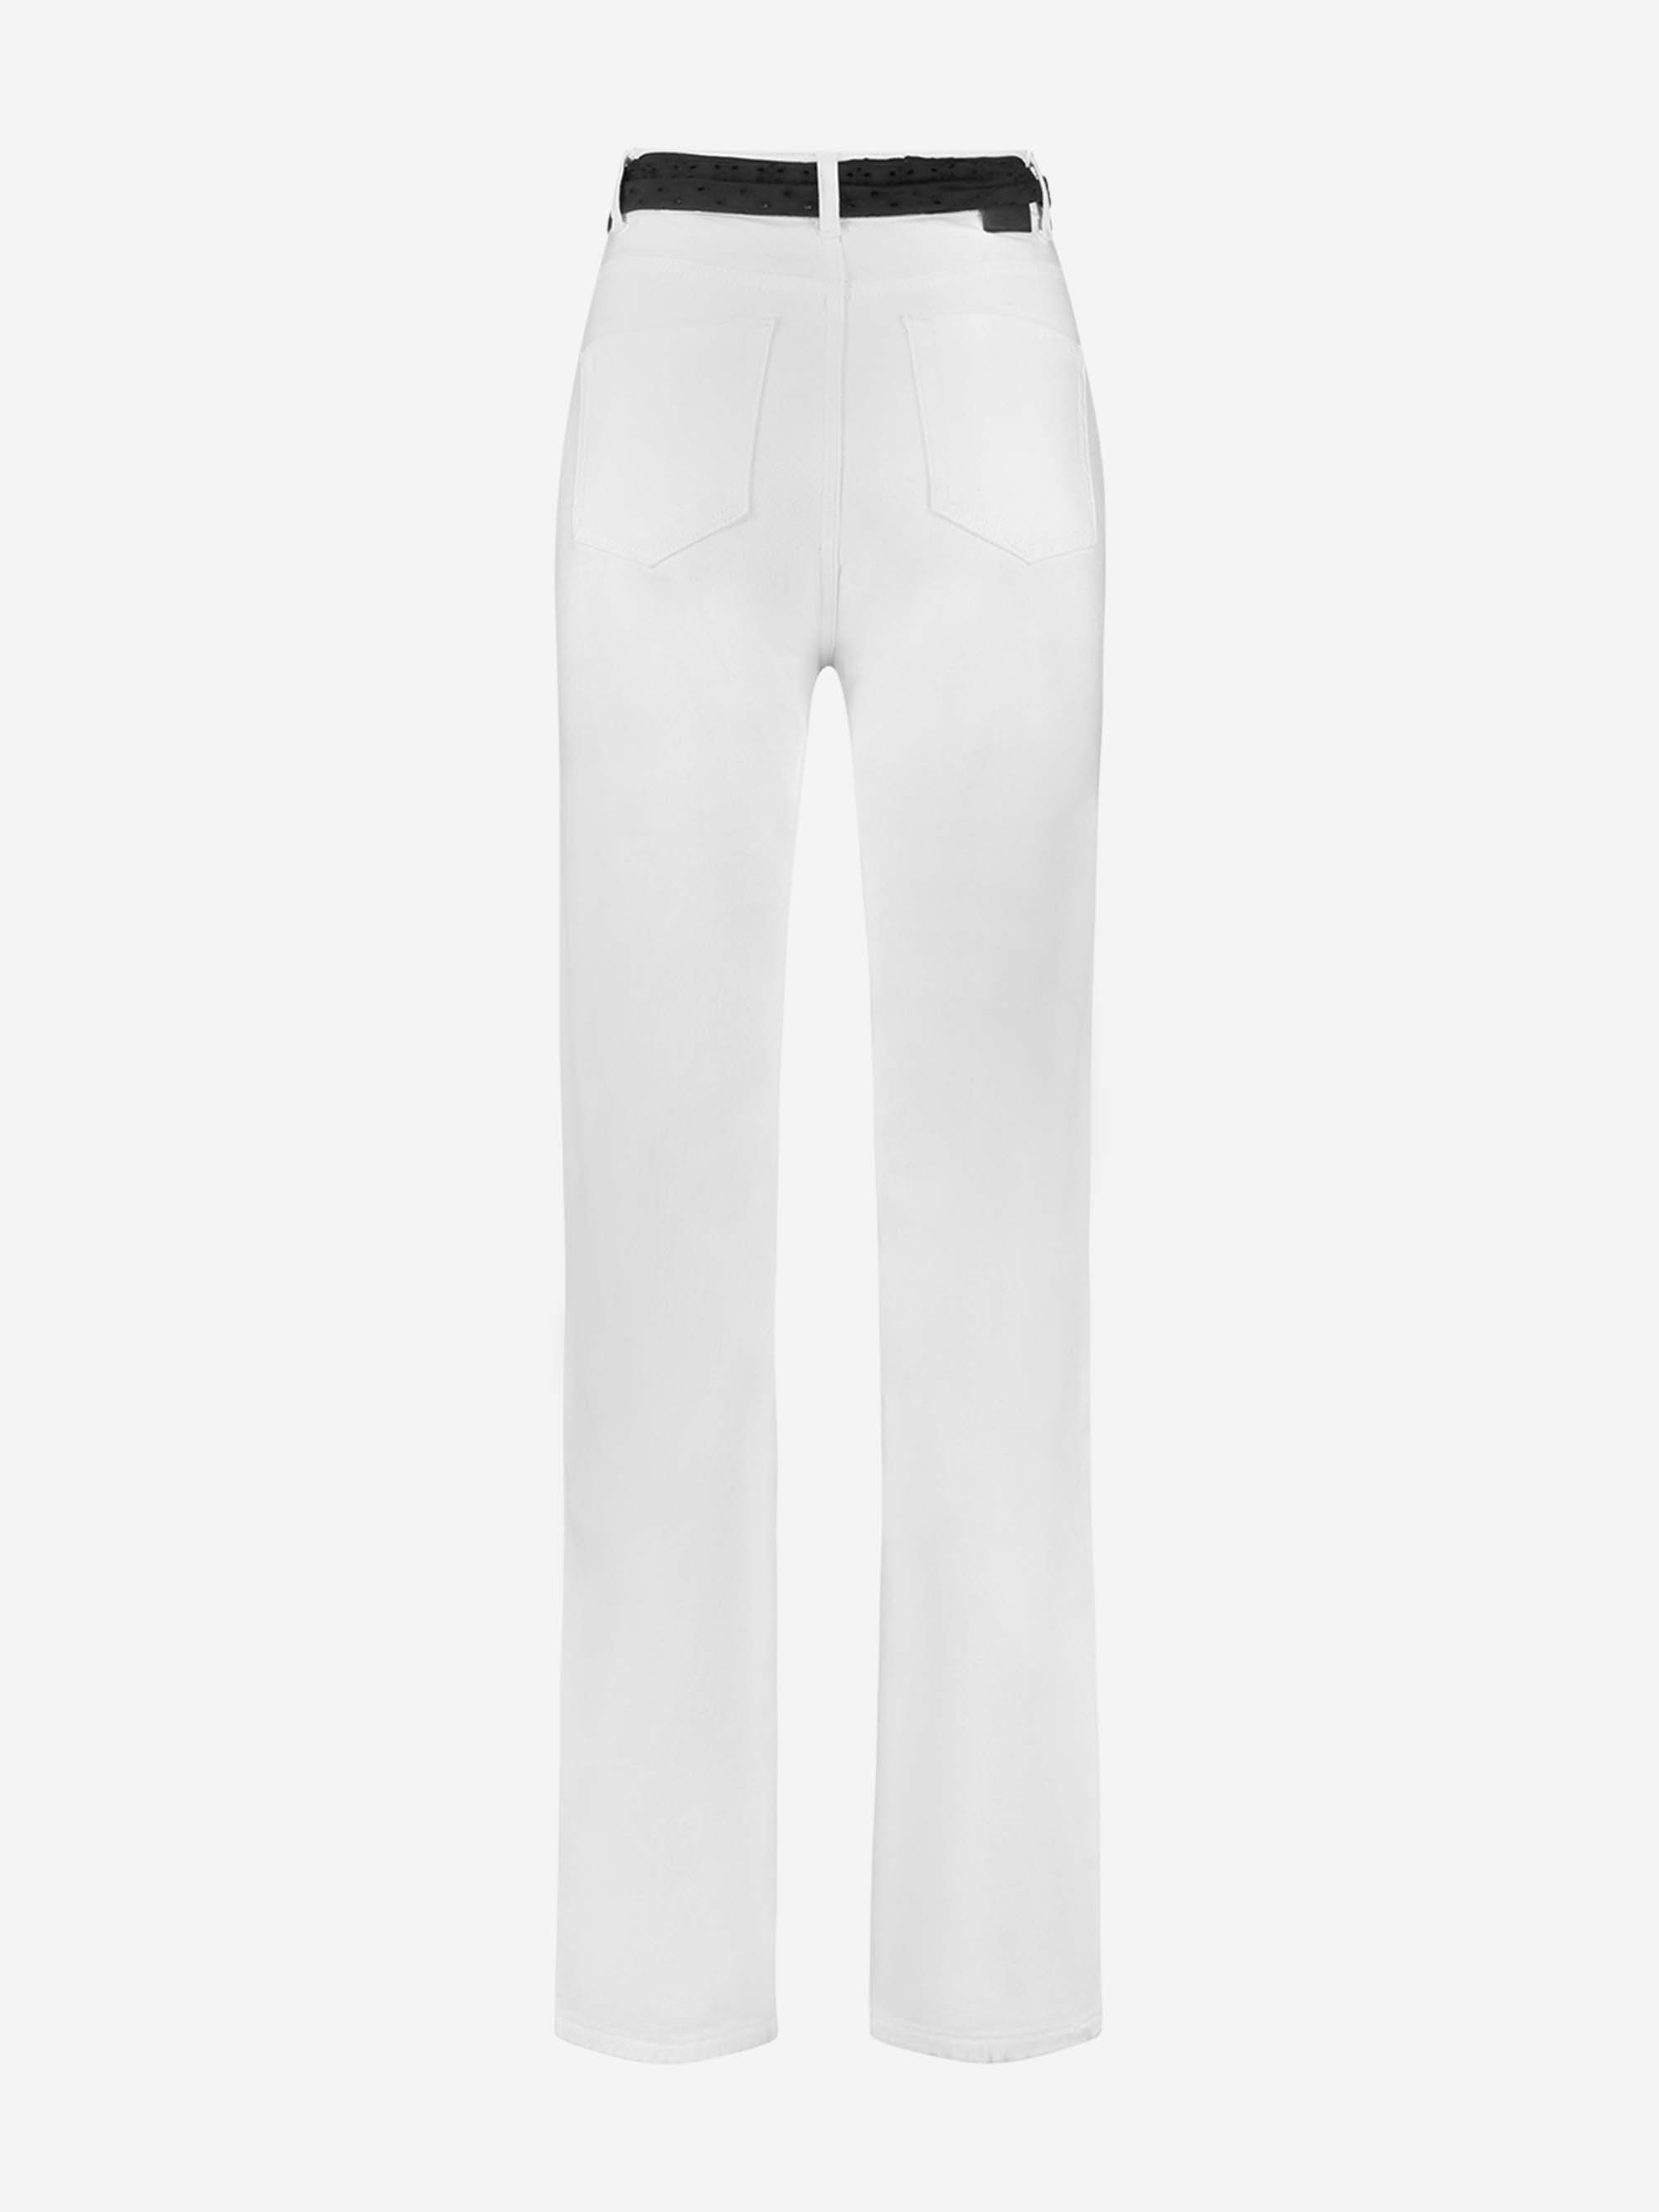 Bowie White Denim Jeans